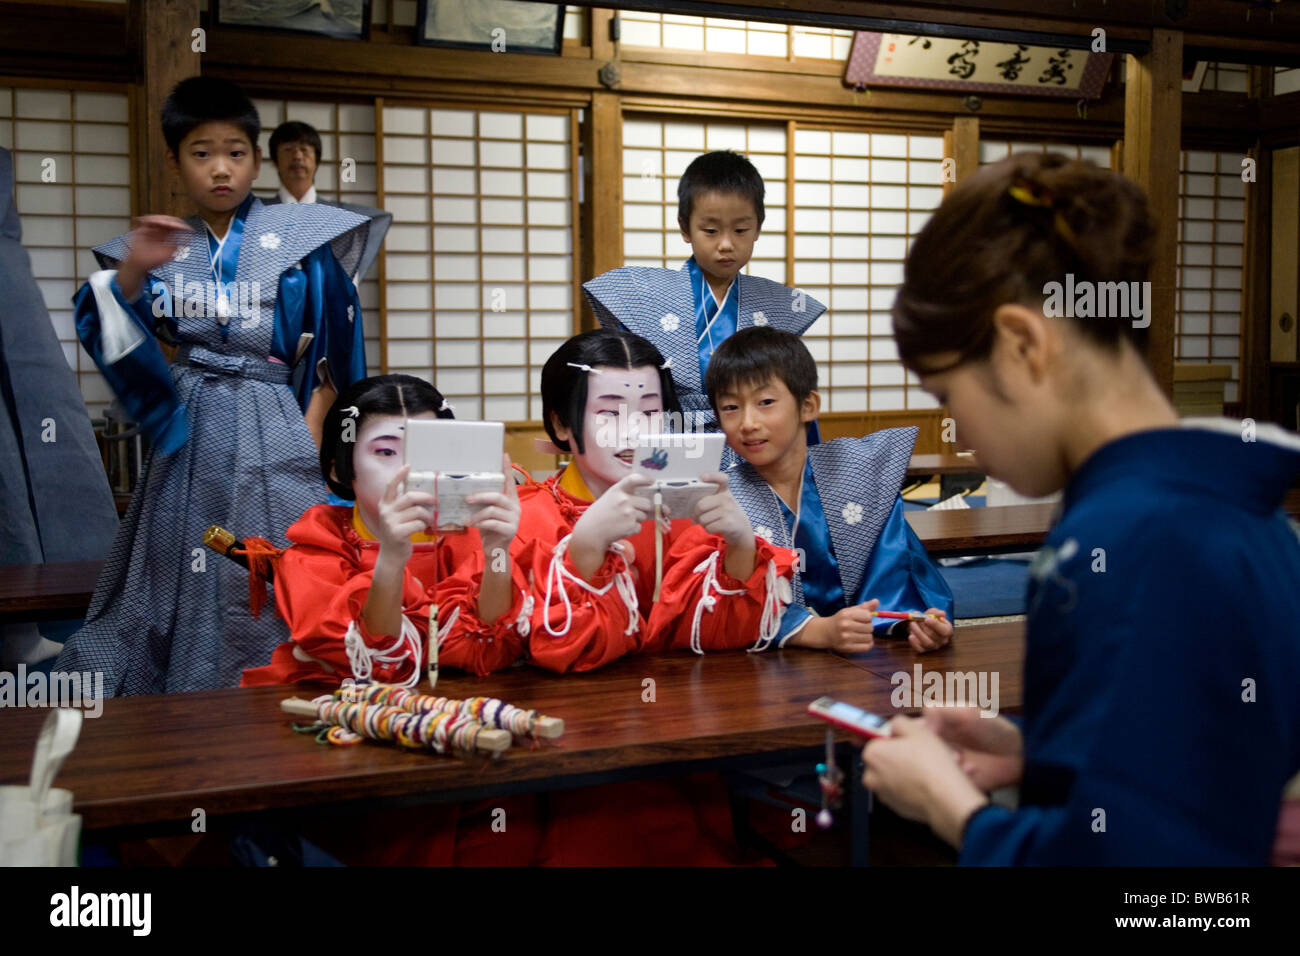 Les enfants vêtus de vêtements traditionnels japonais jouant des jeux nintendo à Kitano Tenman-gu Temple Kyoto au Japon Banque D'Images